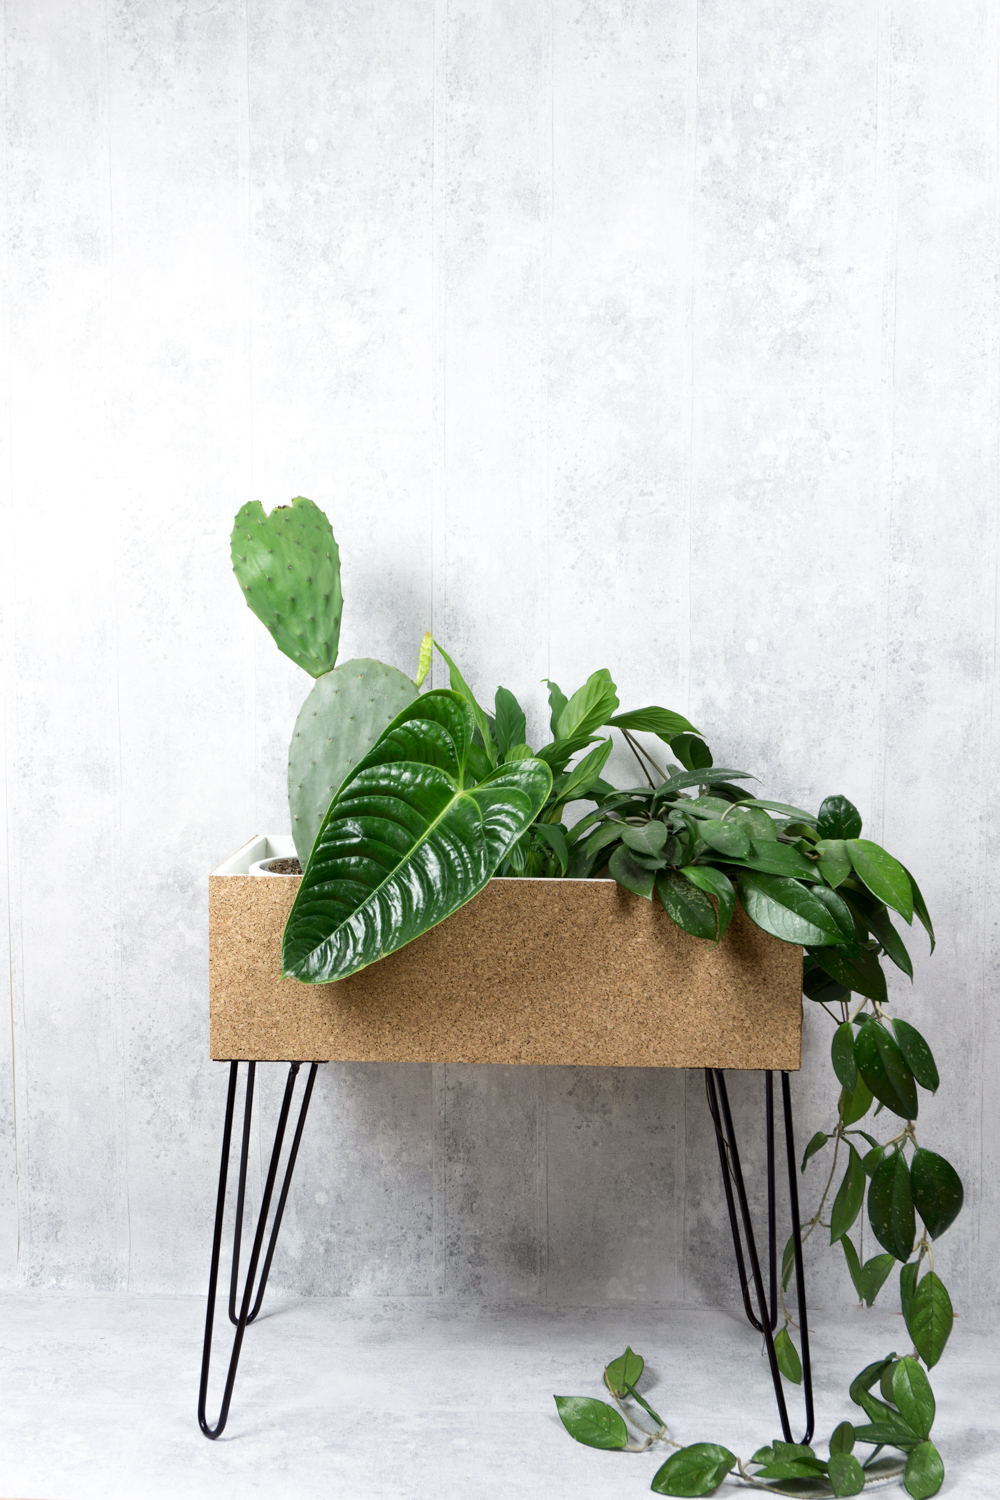 schereleimpapier DIY und Upcycling Blog aus Berlin - kreative Tutorials für Geschenke, Möbel und Deko zum Basteln – DIY Pflanzenständer / Plantstand